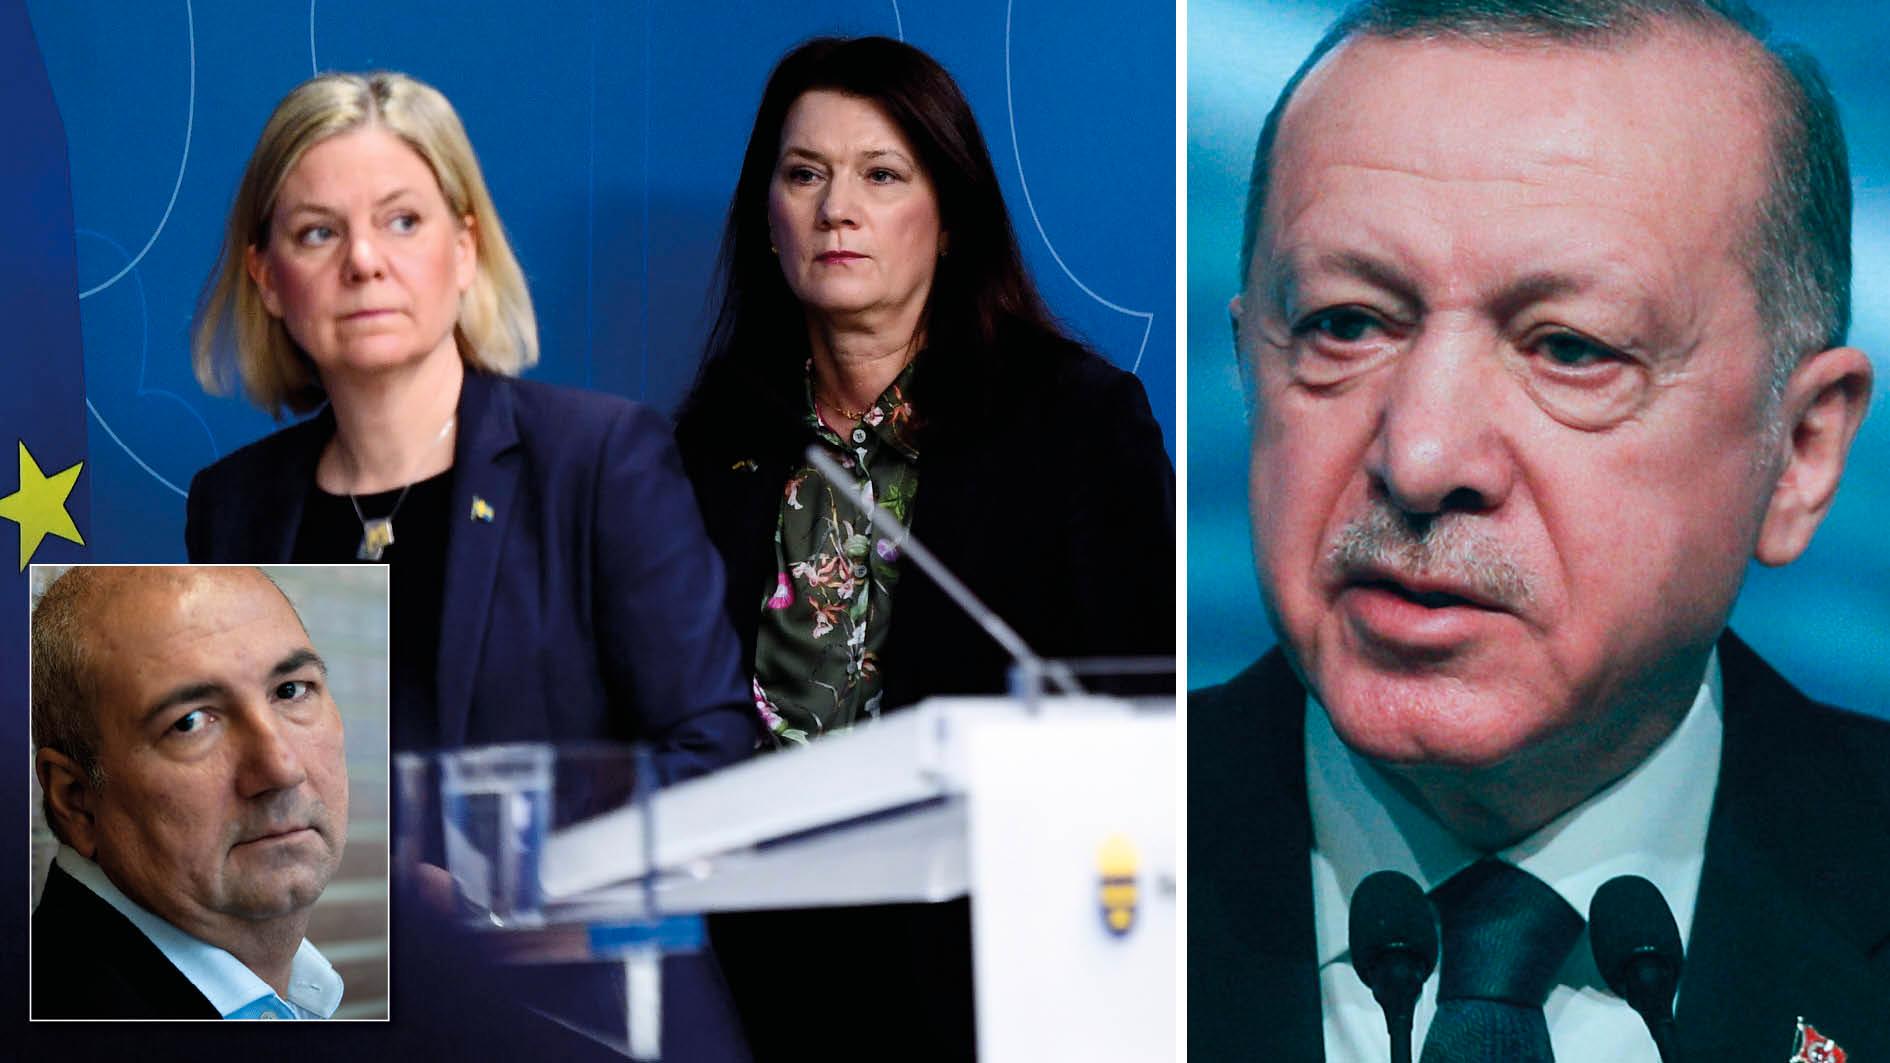 Sverige får inte tillåta despotiska ledare att exportera sitt yttrandefrihetsförbud till våra breddgrader. Det enda språk Erdogan förstår är att vara bestämd mot honom, skriver Kurdo Baksi.